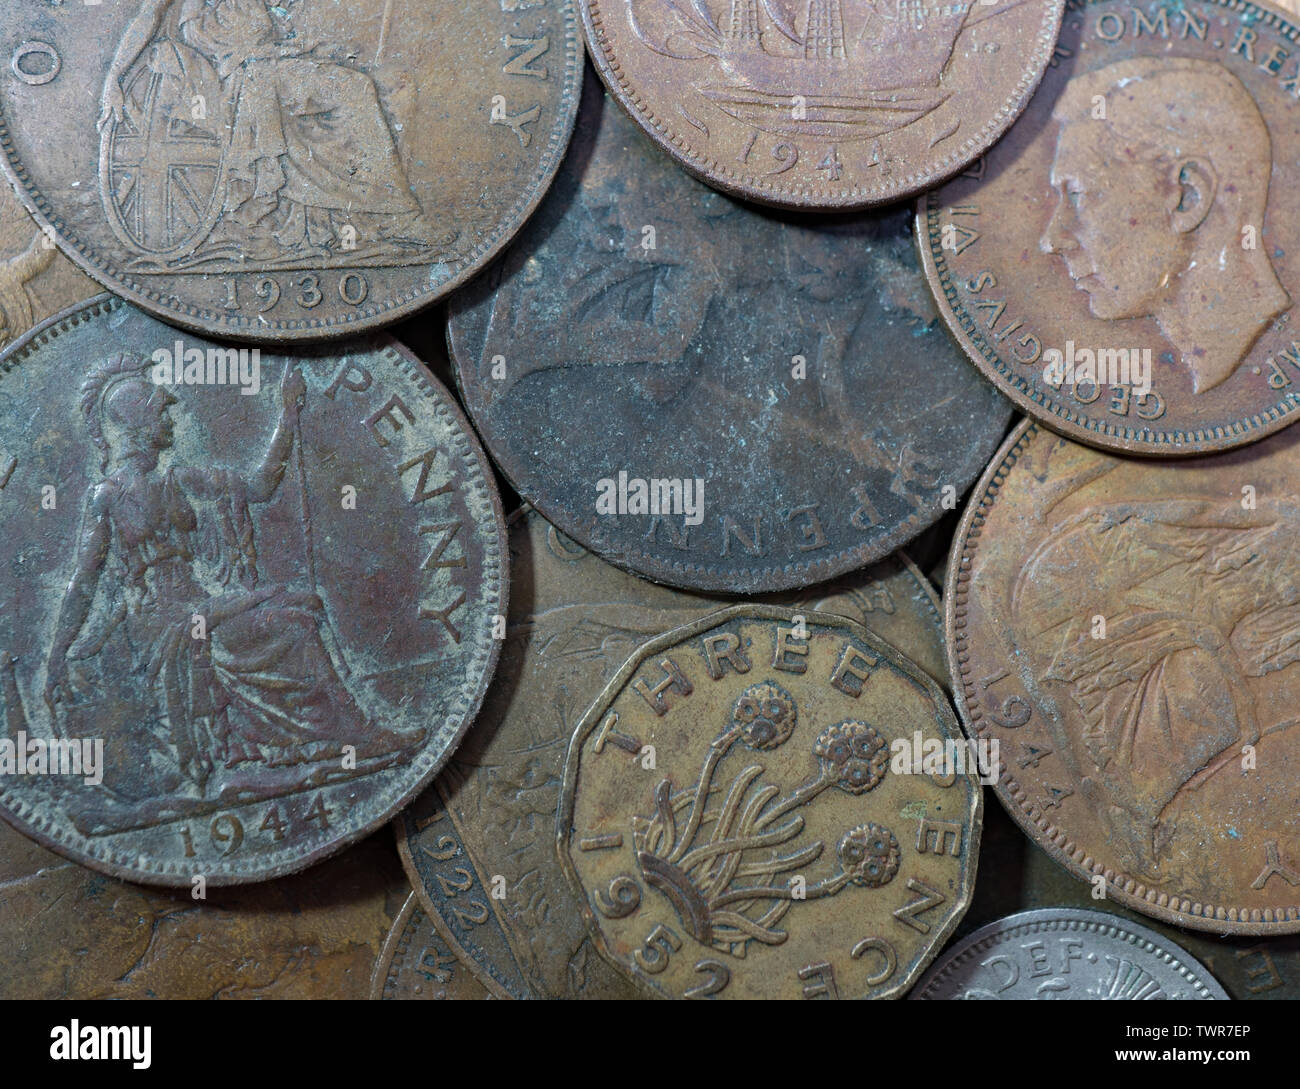 Antiguas monedas británicas, un centavo monedas. threepenny bit,medio penique y sixpence. Islas Británicas. Foto de stock